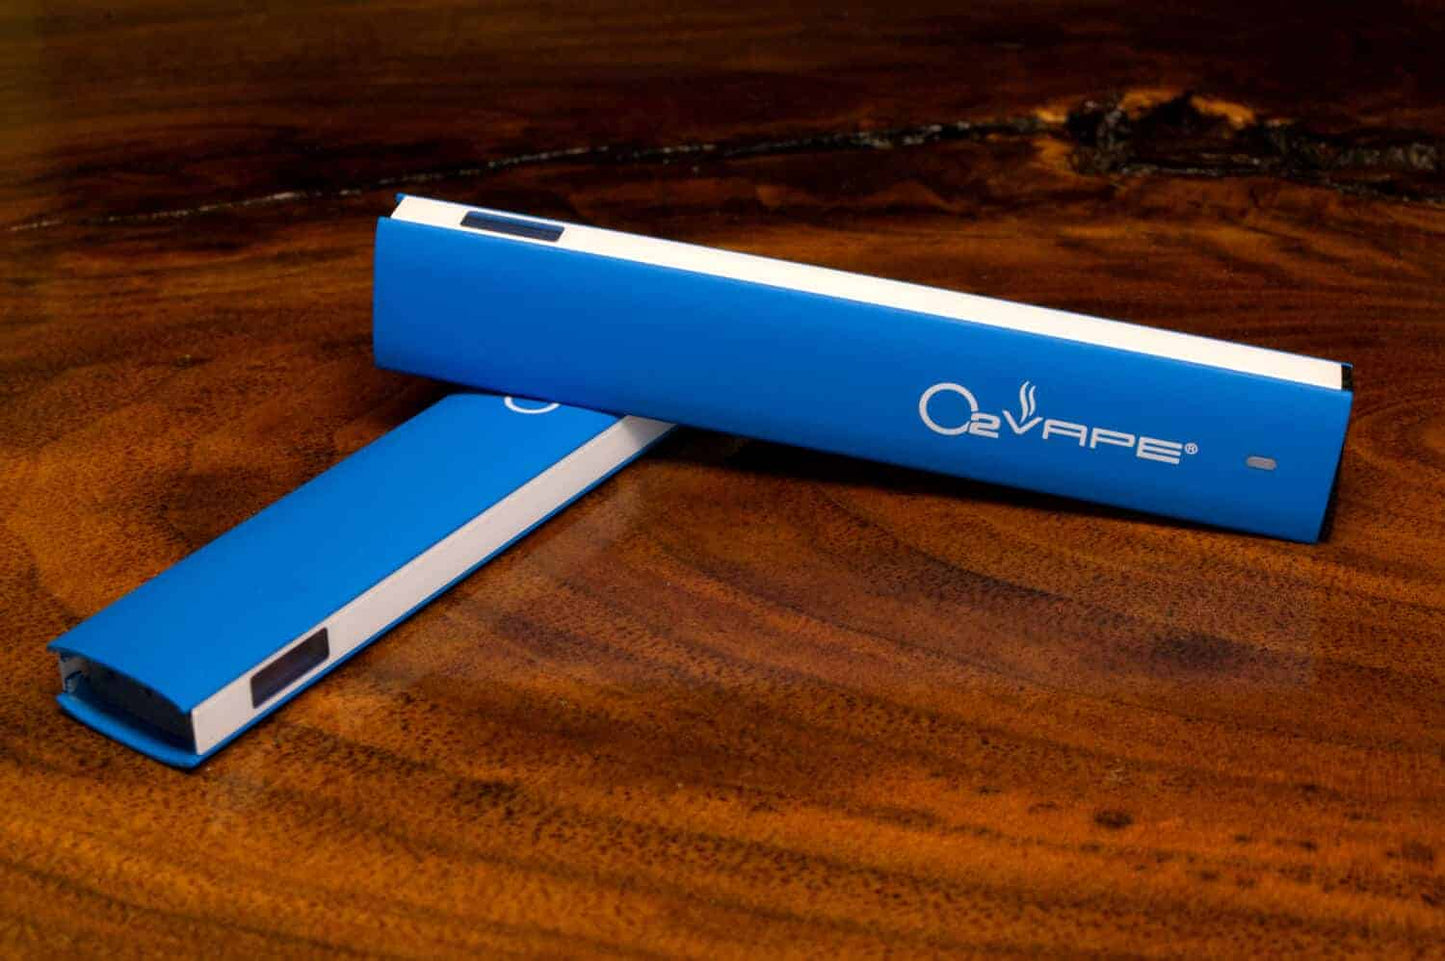 O2 Vape Aero Disposable: Rechargeable Disposable Slim Vape Pen Best Sales Price - Vaporizers